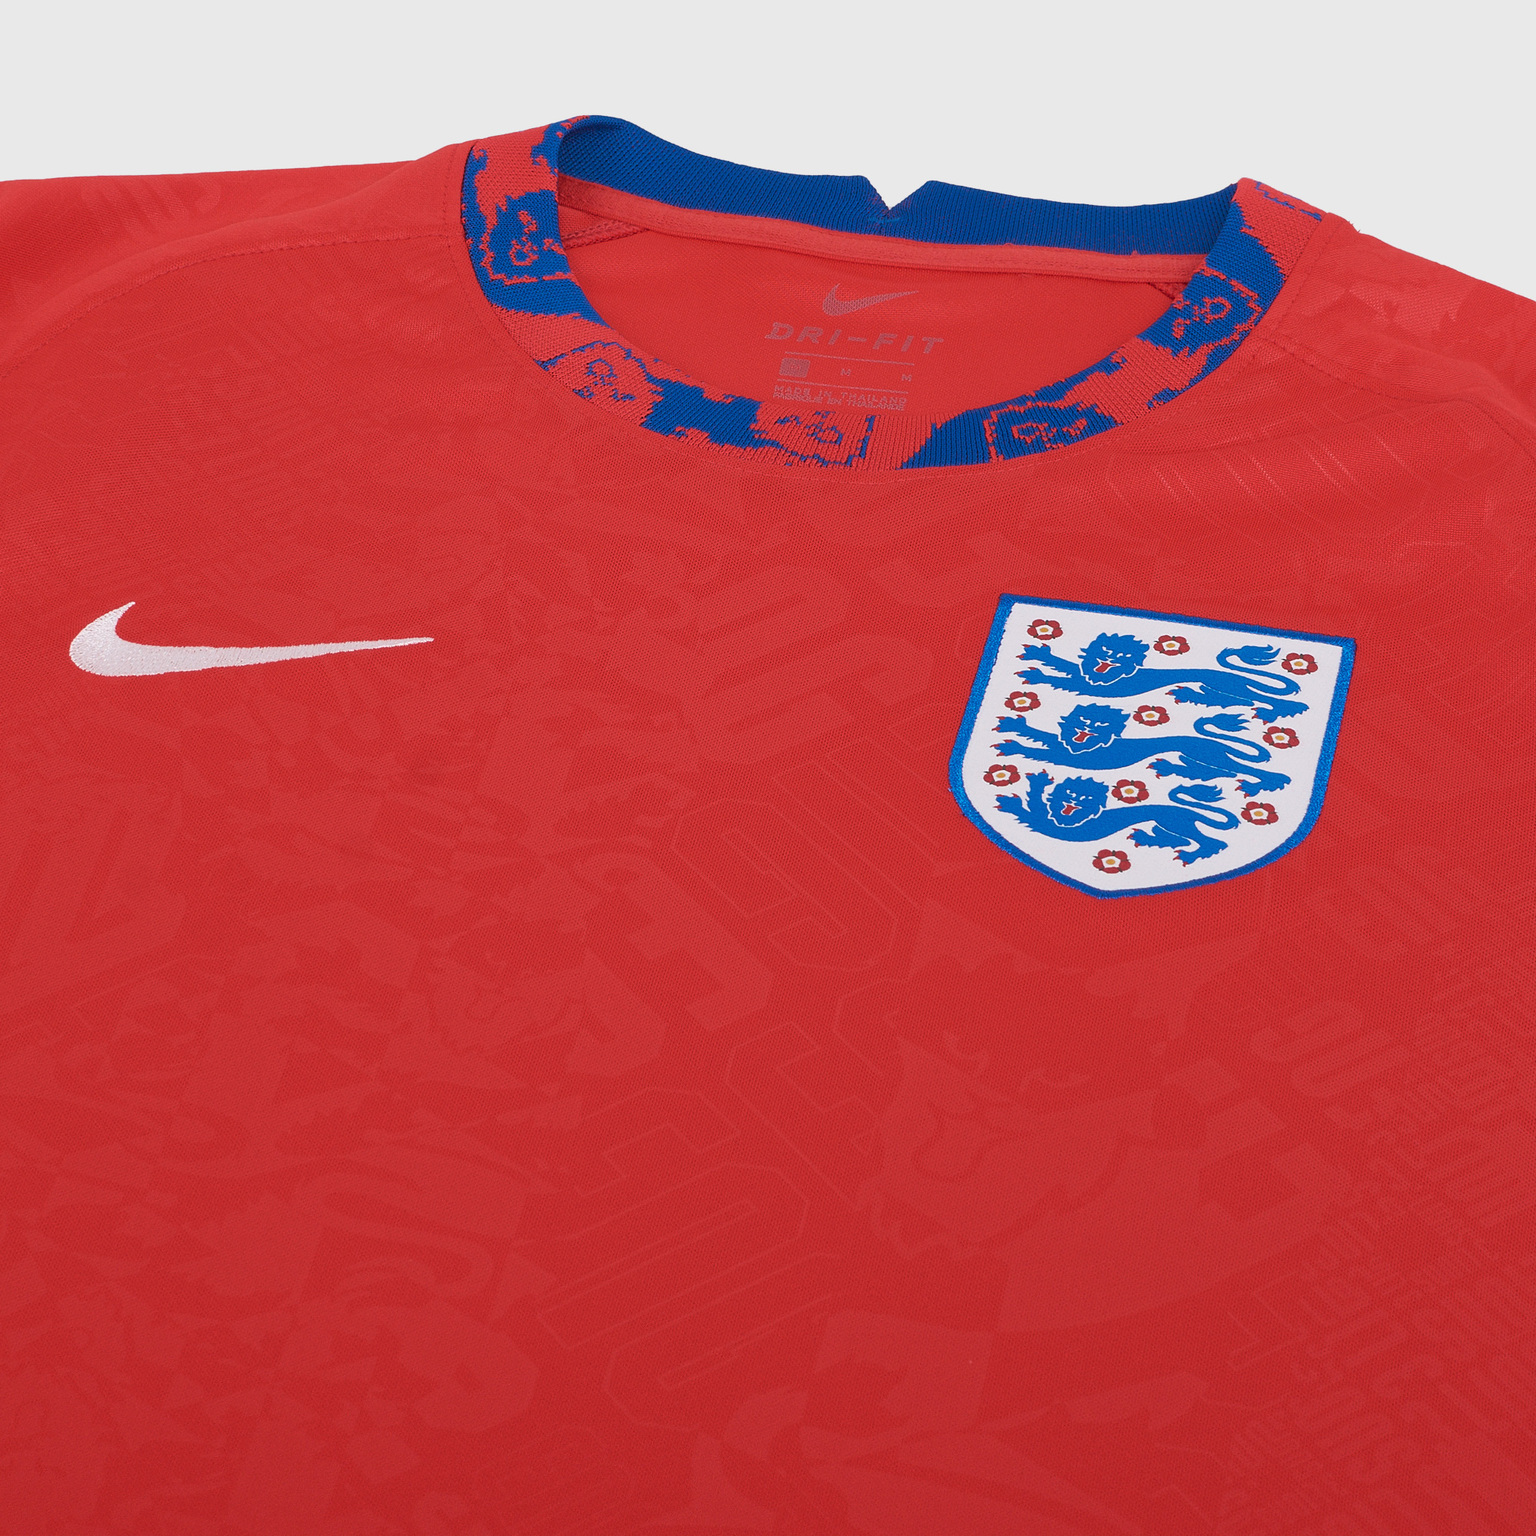 Футболка предыгровая Nike сборной Англии сезон 2020/21